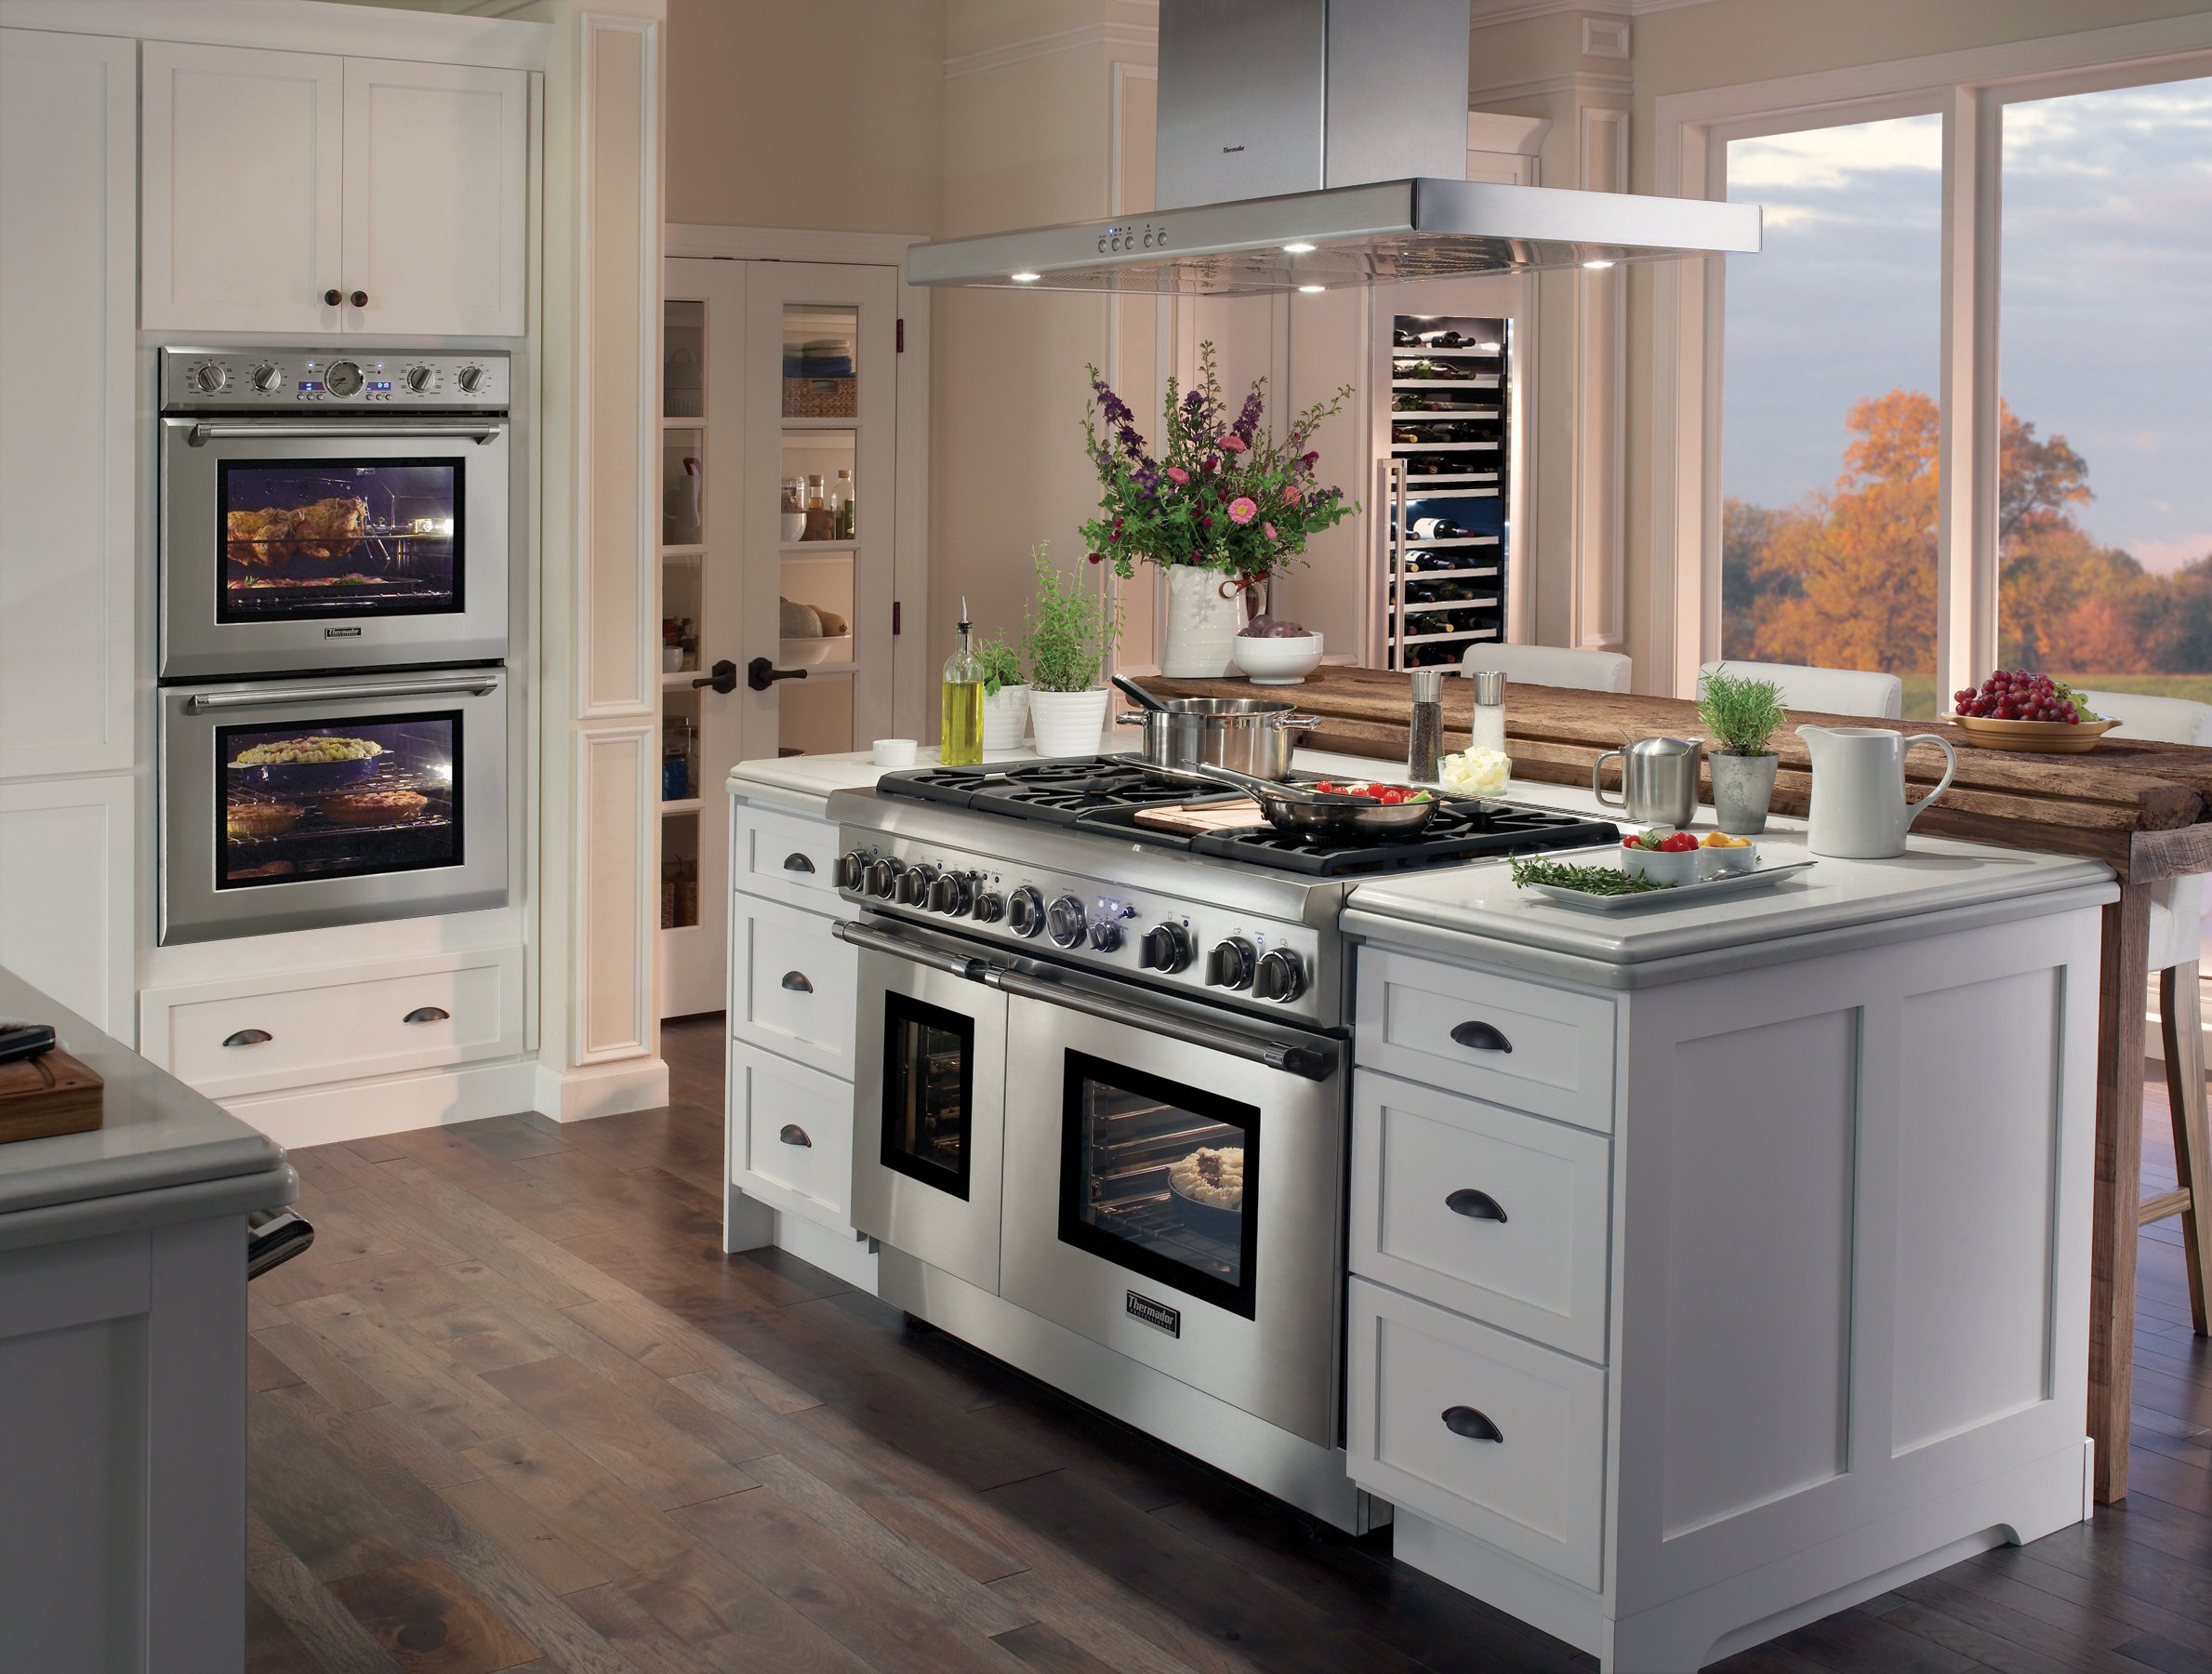 Cupboard glass fridge cooker. Кухонная плита. Красивые кухни. Встраиваемая техника для кухни. Газовая плита в интерьере.